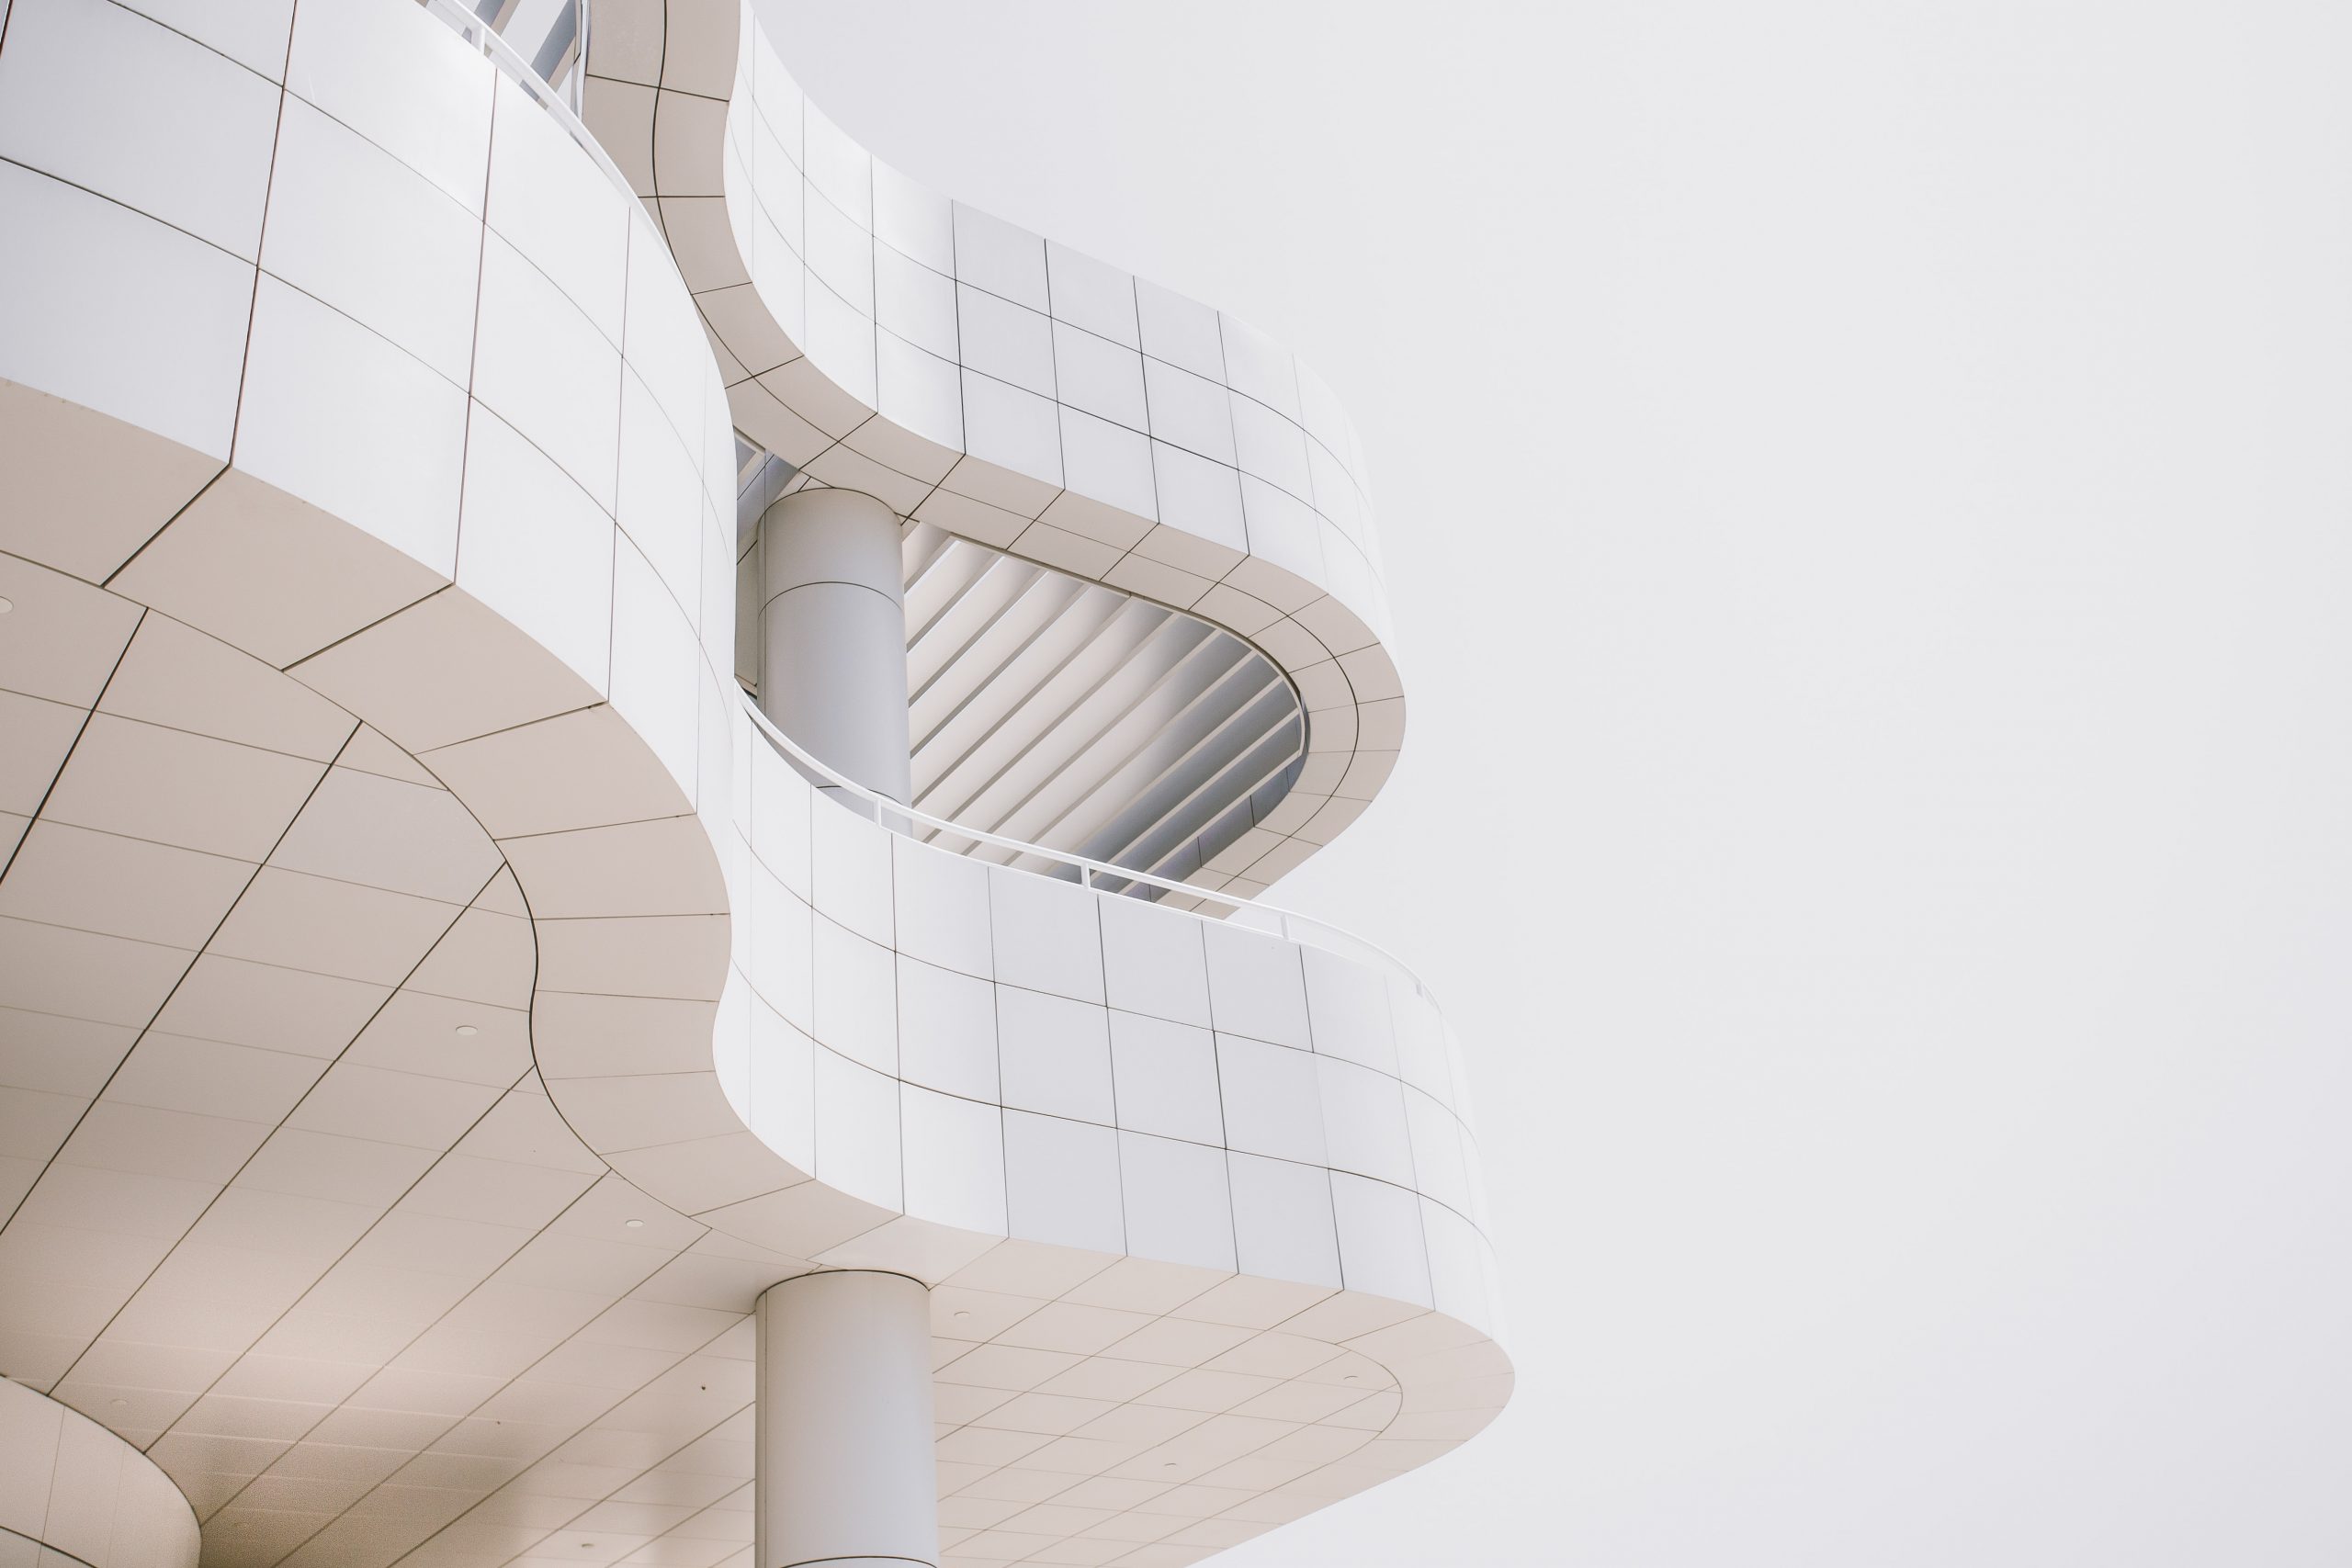 Prémio de arquitetura Mies van der Rohe tem 14 projetos portugueses entre os nomeados